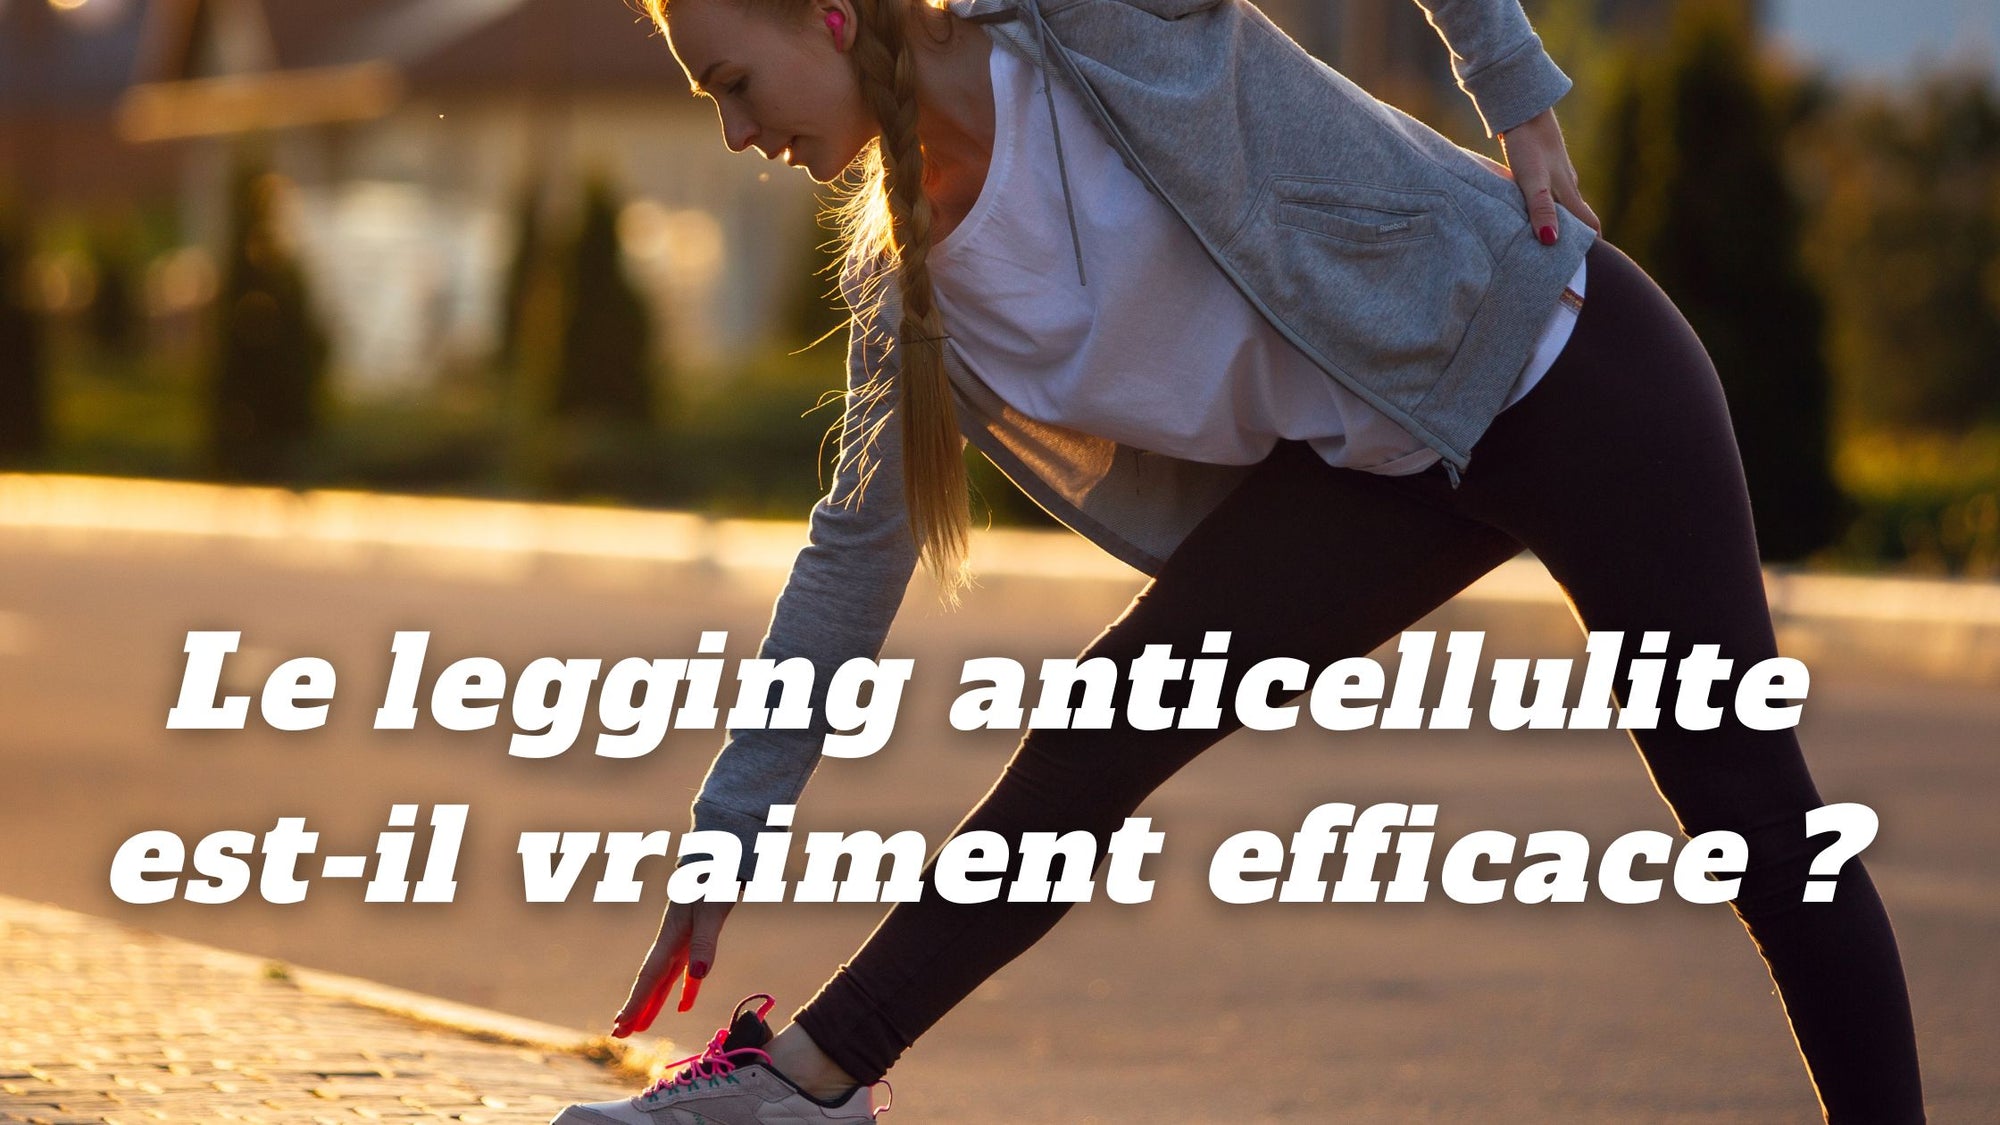 Le legging anticellulite est-il vraiment efficace ?